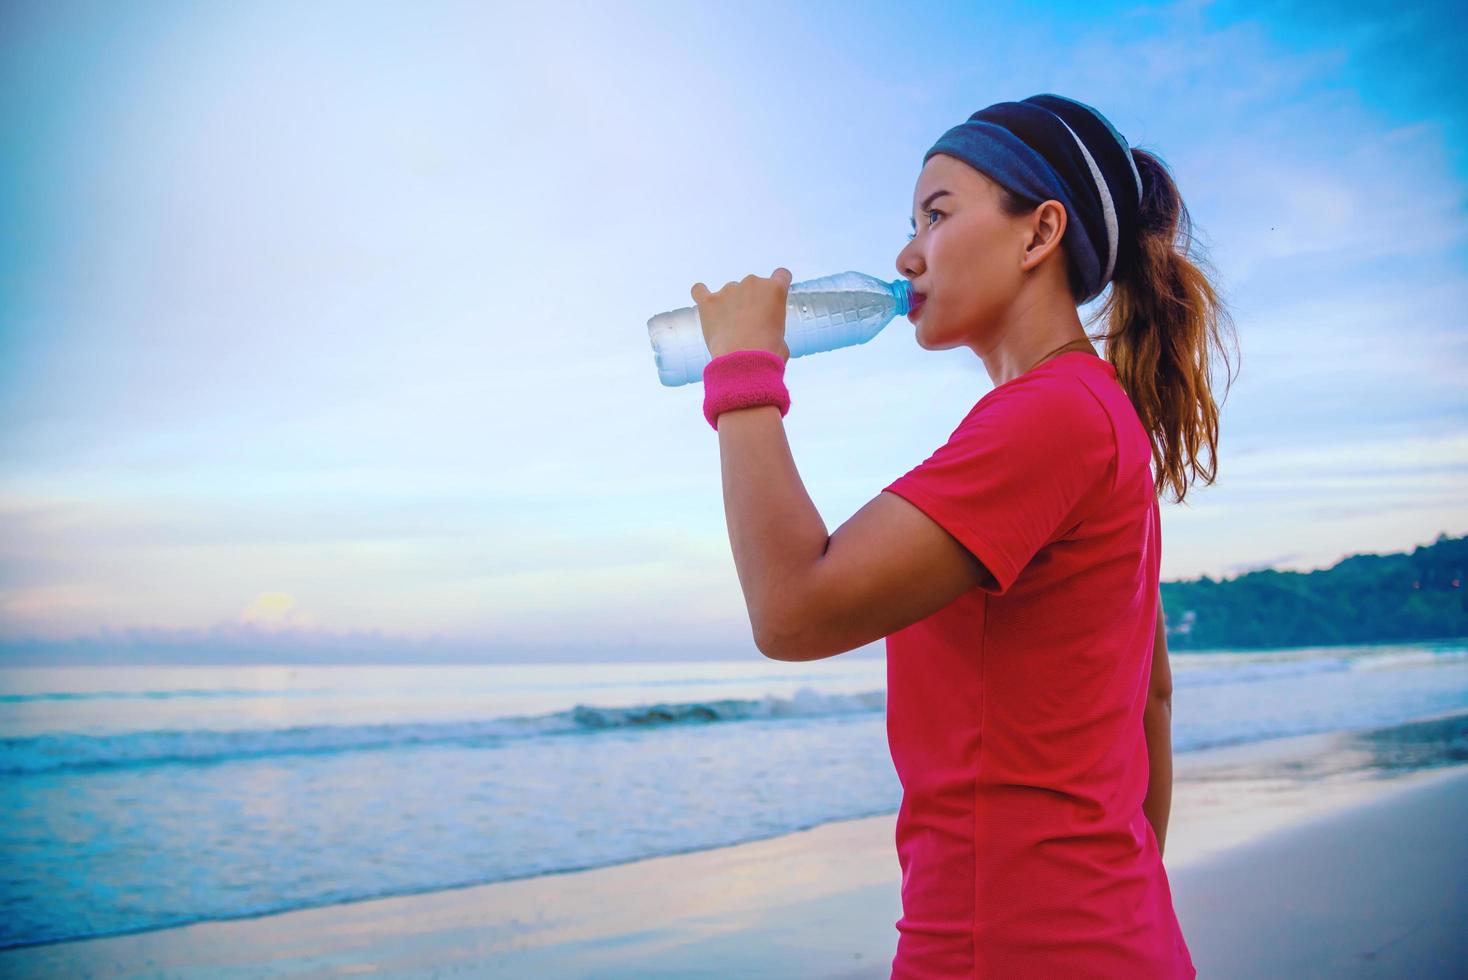 aziatische vrouwen joggen training op het strand in de ochtend. ontspan met de zeewandeling en drinkwater uit de plastic flessen foto